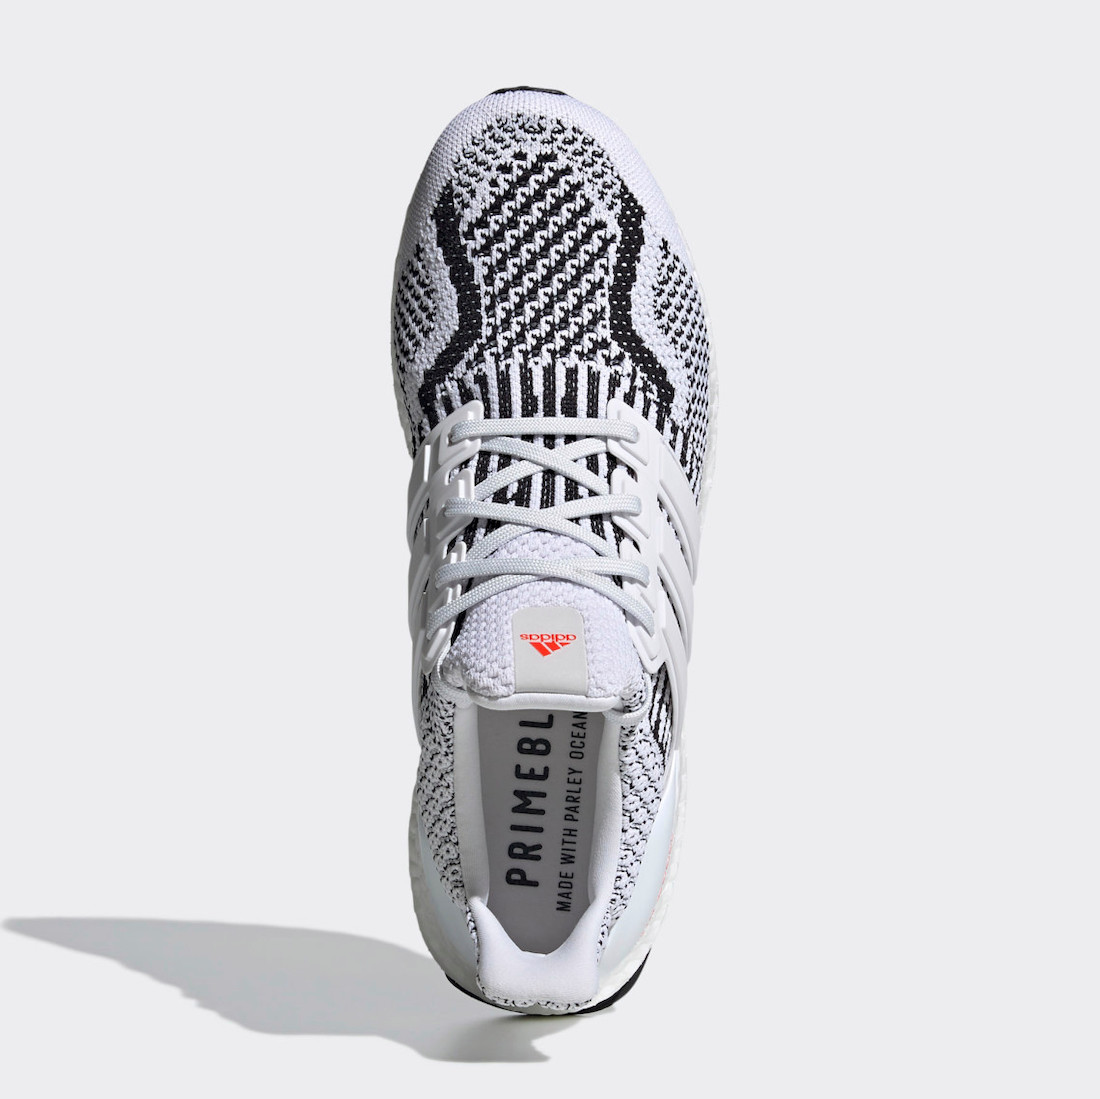 adidas Ultra Boost 5.0 DNA Zebra G54960 Release Date